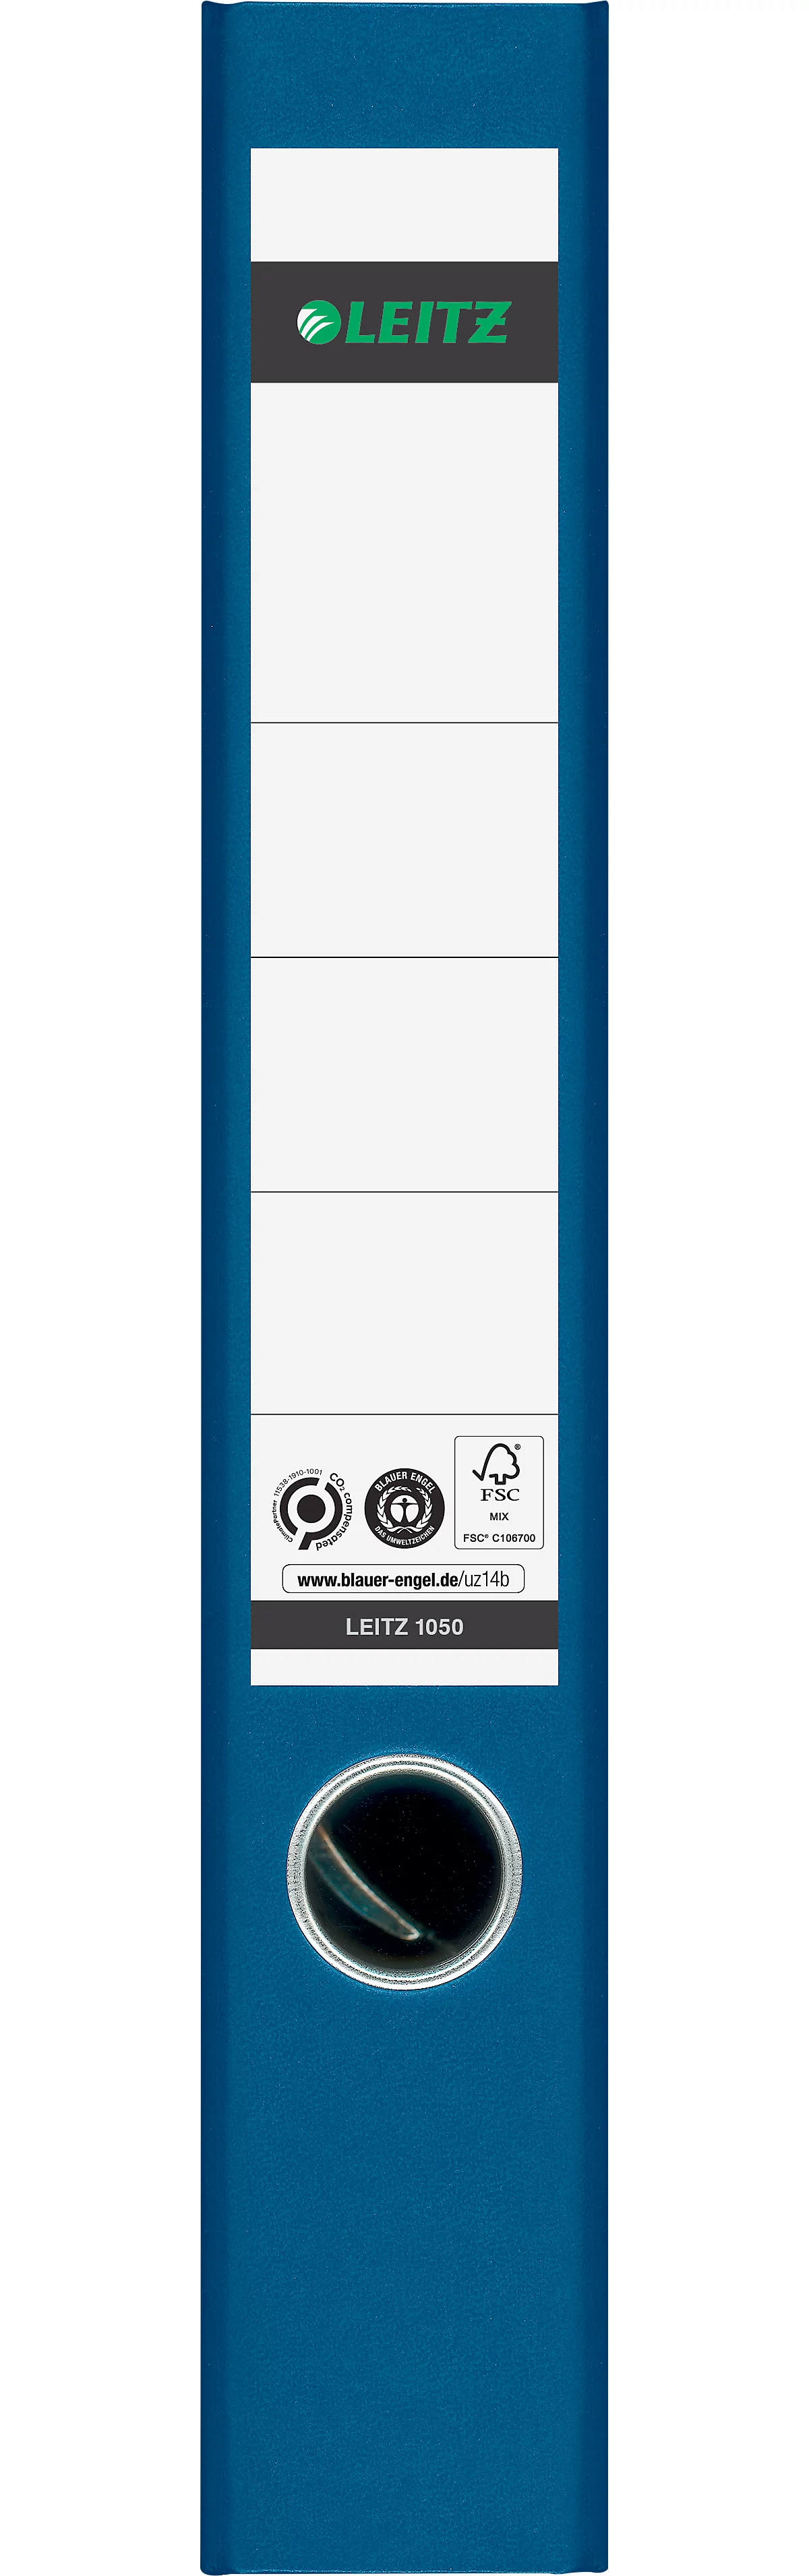 Carpeta LEITZ® 1050, DIN A4, ancho de lomo 52 mm, agujero para los dedos, etiqueta de lomo pegada, clima neutro, cartón duro, 20 unidades, azul